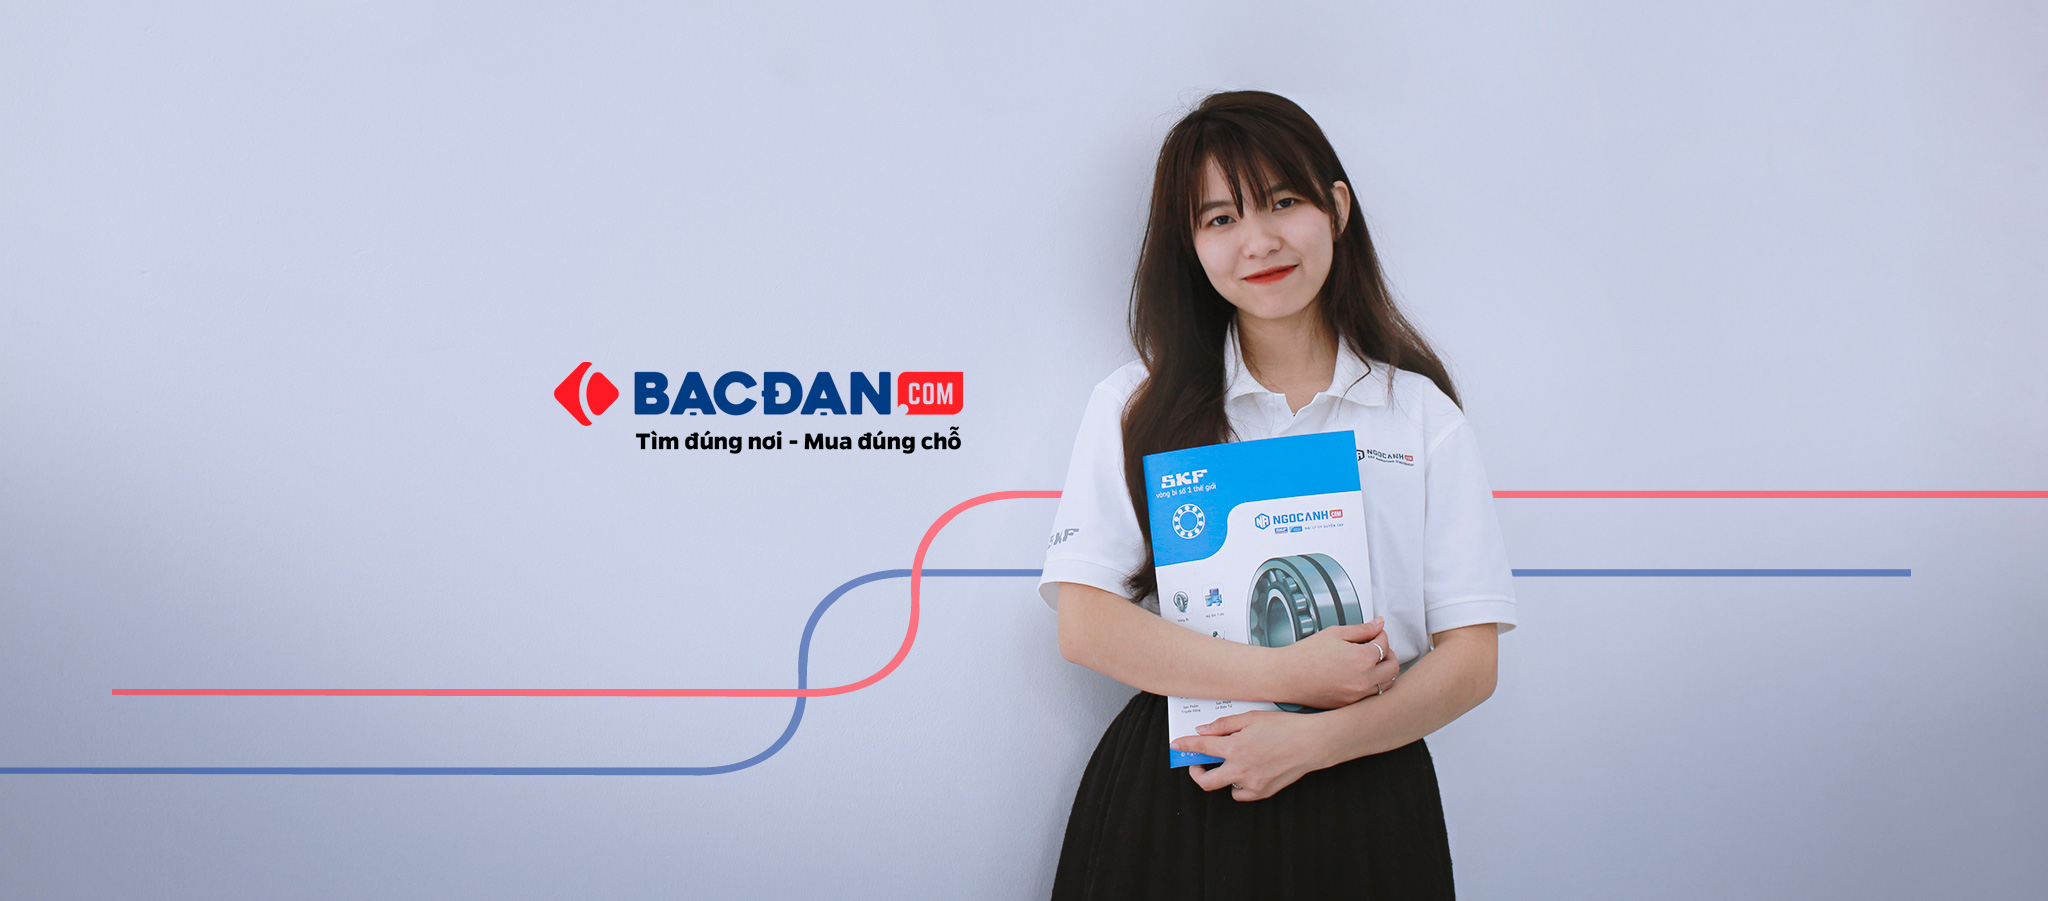 Bạc đạn Online (bacdan.com) được quản lý và vận hành bởi SKF Ngọc Anh - Đại lý uỷ quyền SKF chính hãng tại Việt Nam